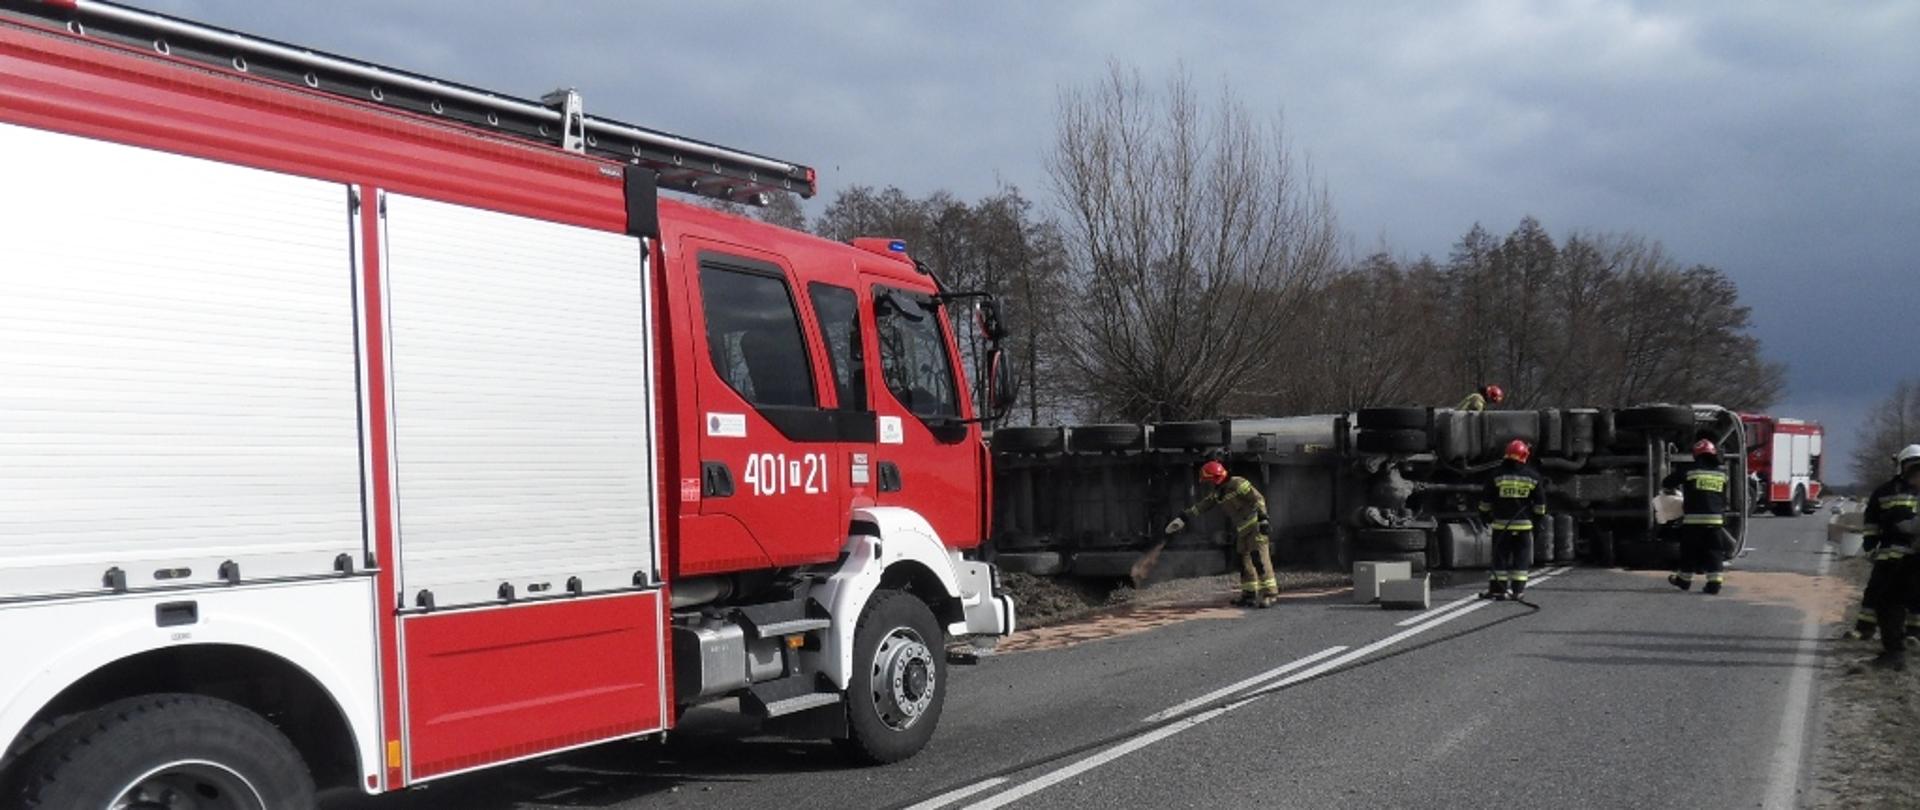 Na zdjęciu przewrócony pojazd ciężarowy, przy nim pracujący strażacy, po lewej stronie samochód pożarniczy o raz radiowóz policji